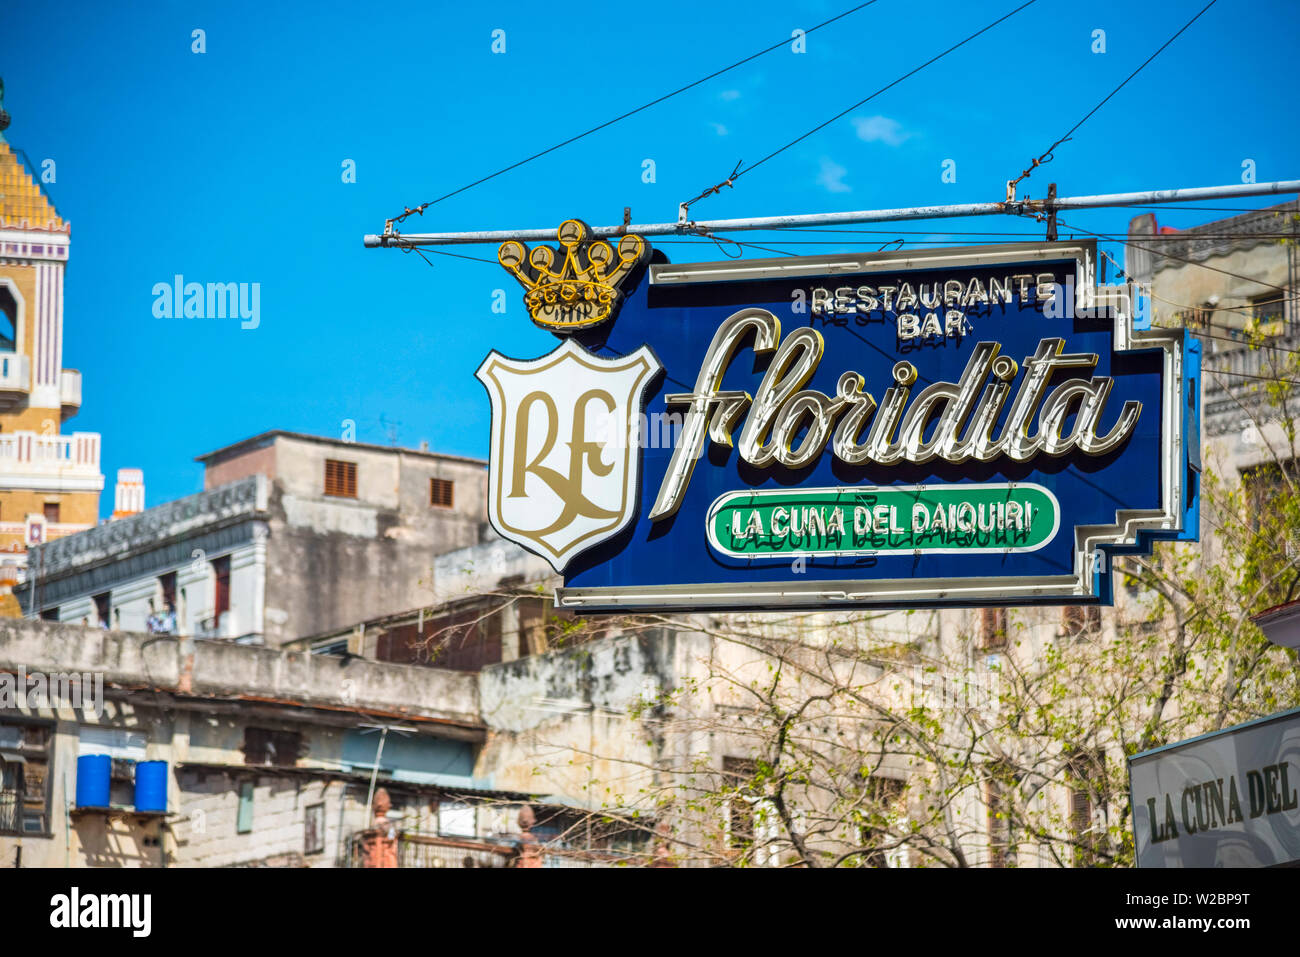 Cuba, Havana, La Habana Vieja Stock Photo